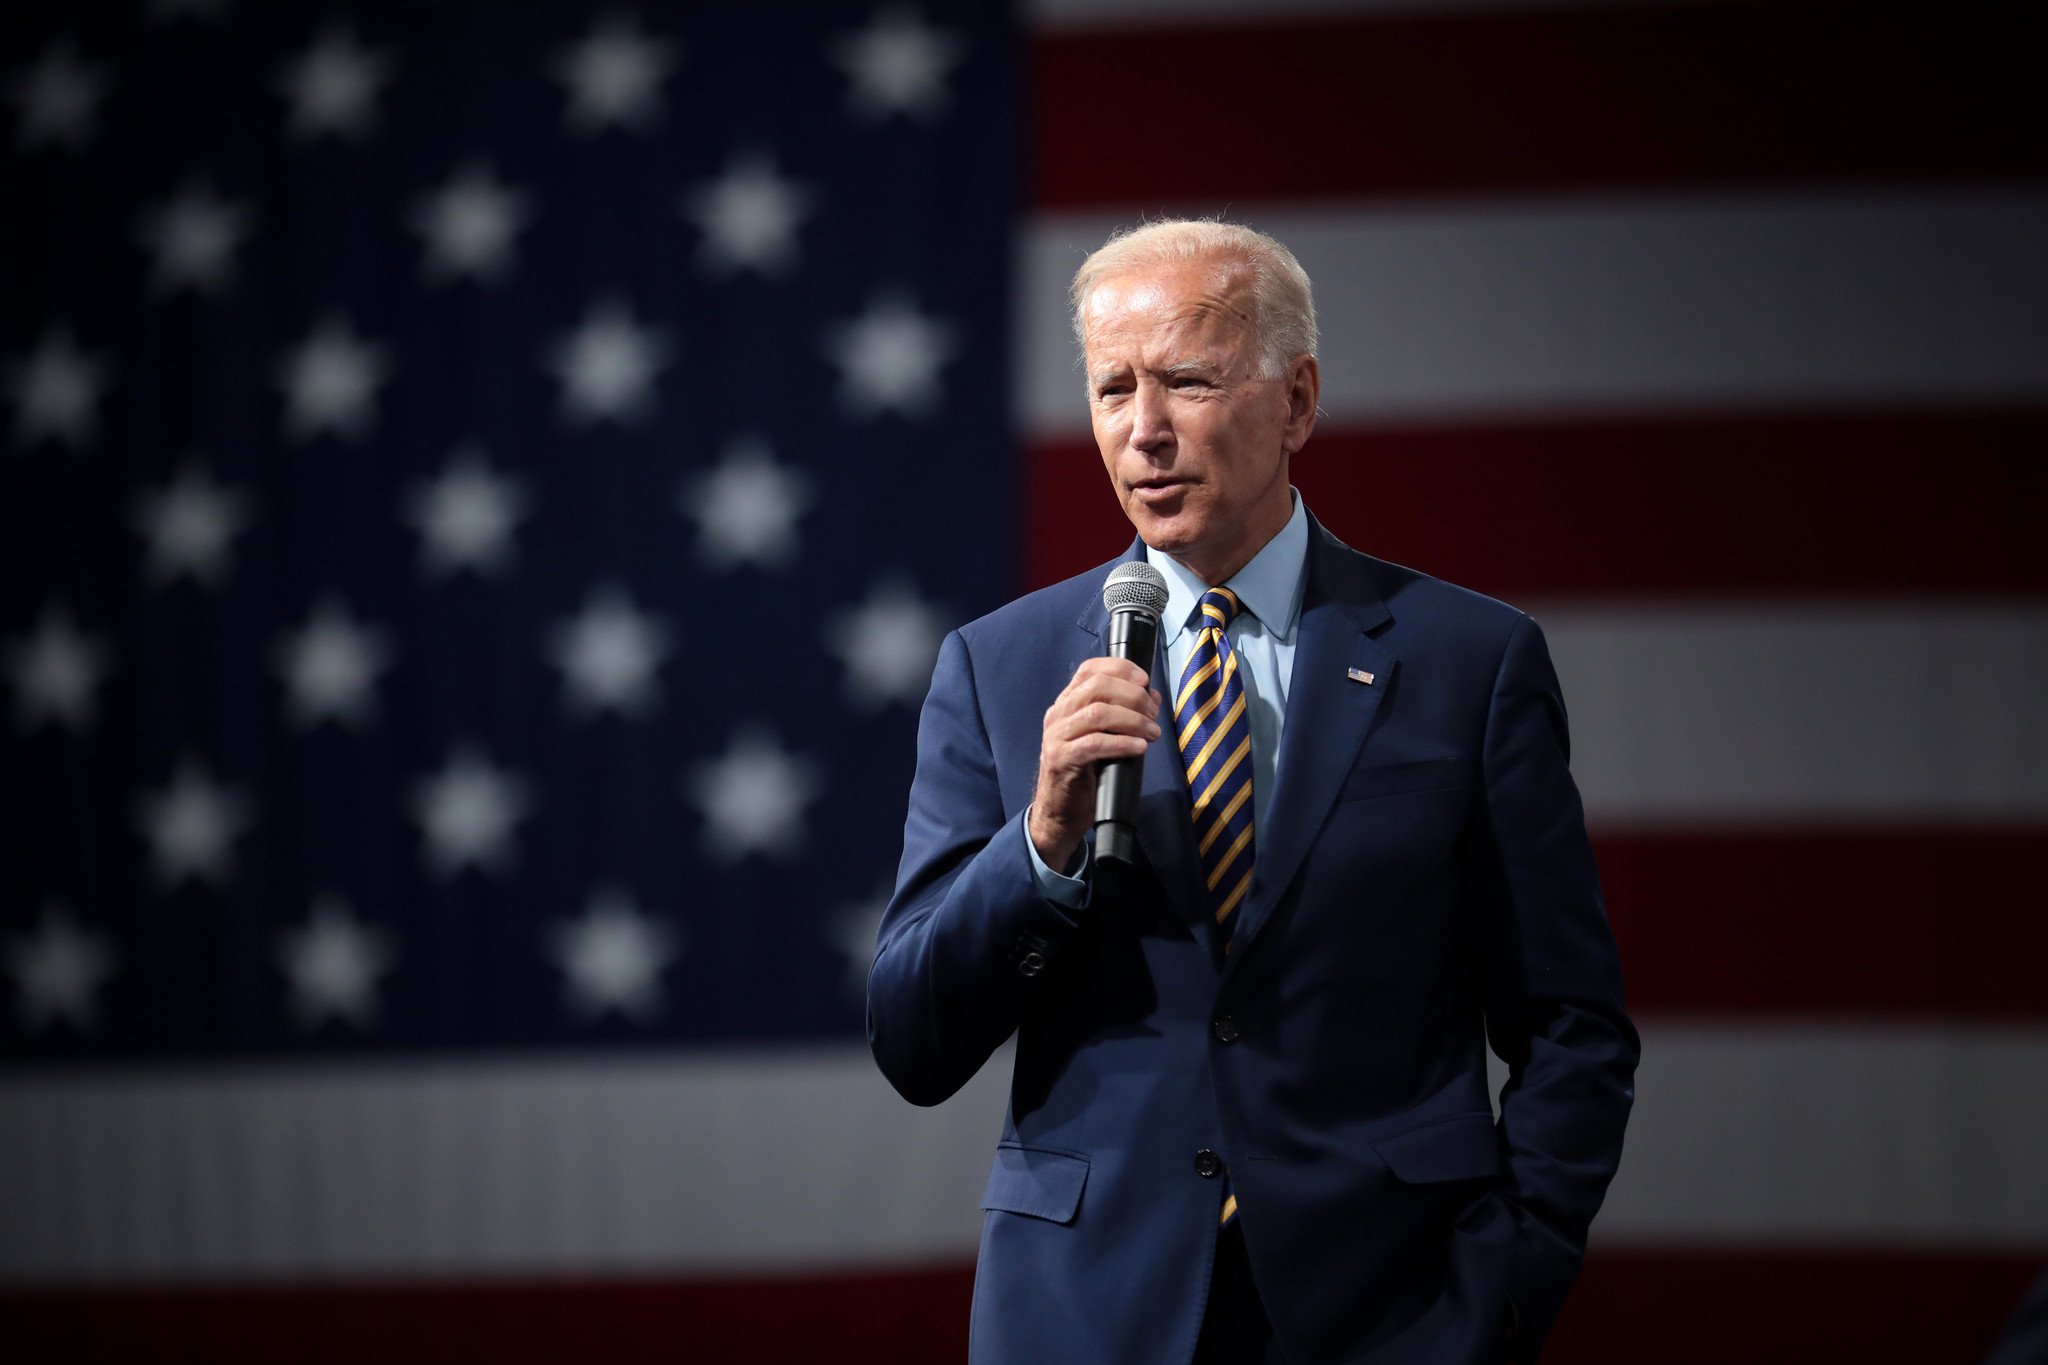 Joe Biden in 2019. Photograph by Flickr user Gage Skidmore.